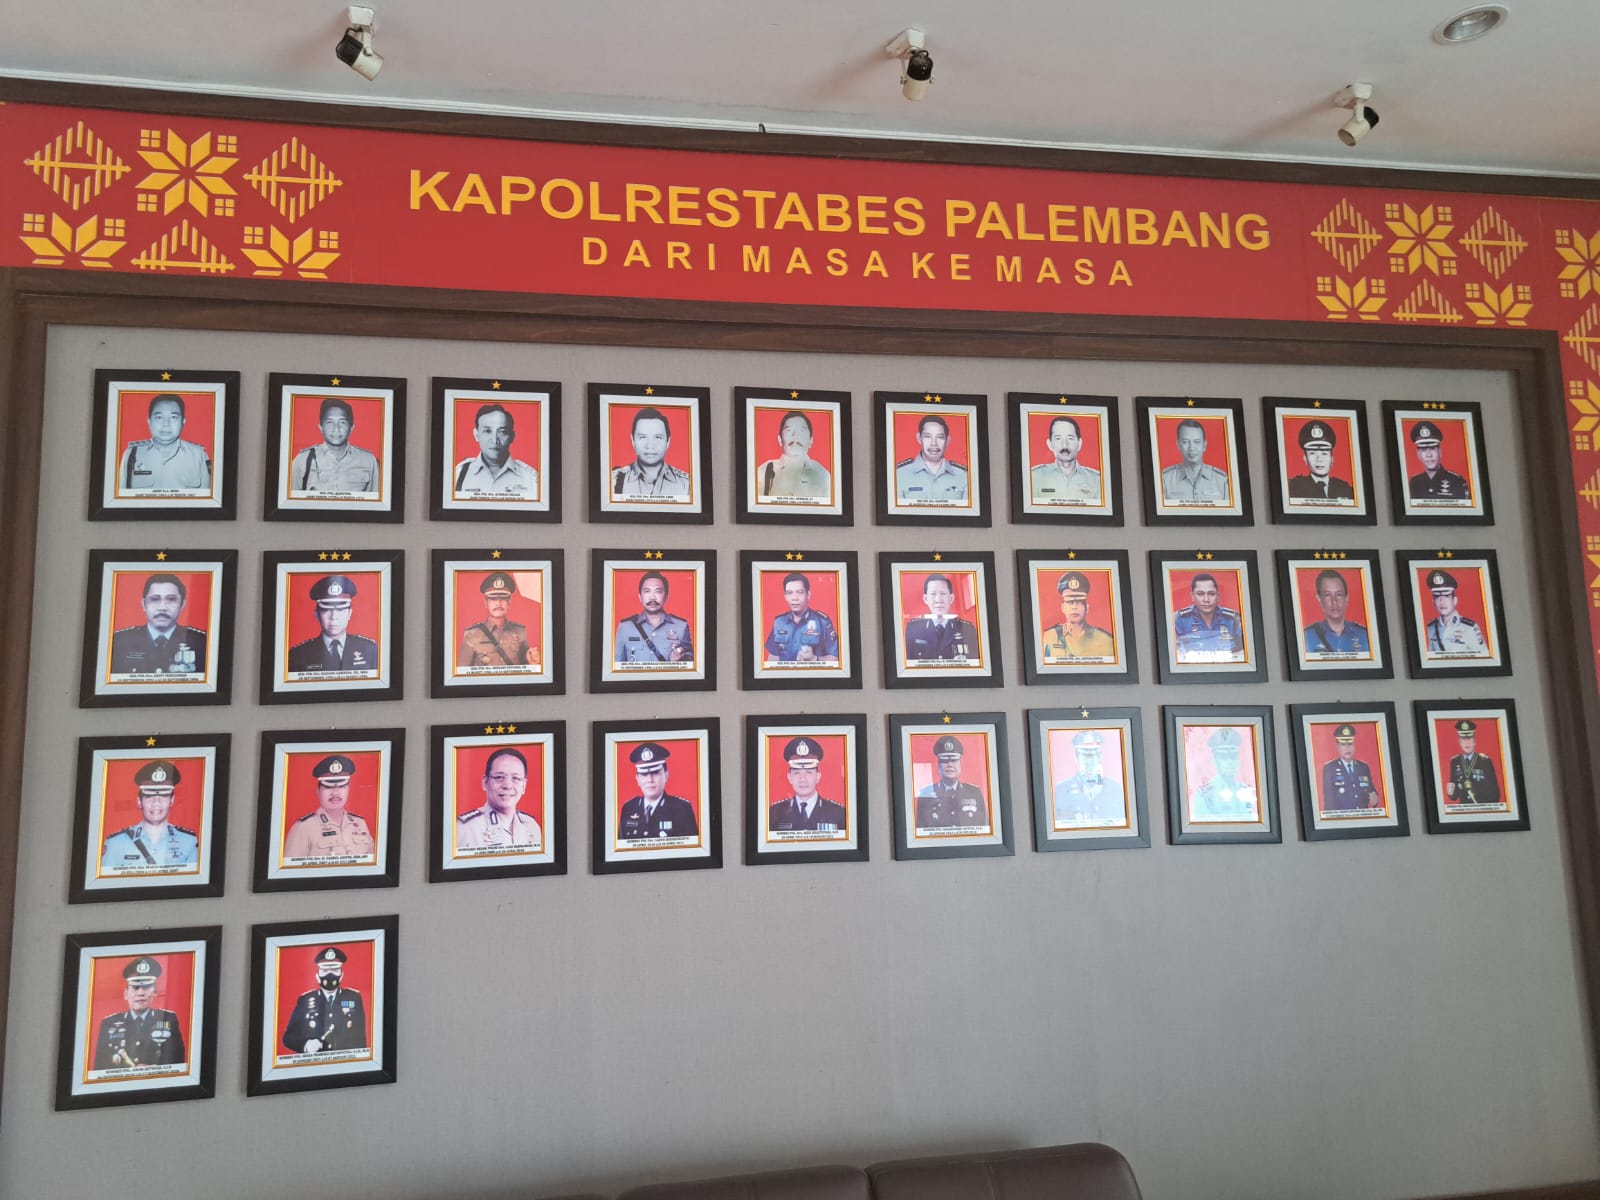 Ini Nama-Nama Kapolrestabes Palembang Sejak Berdiri 1964